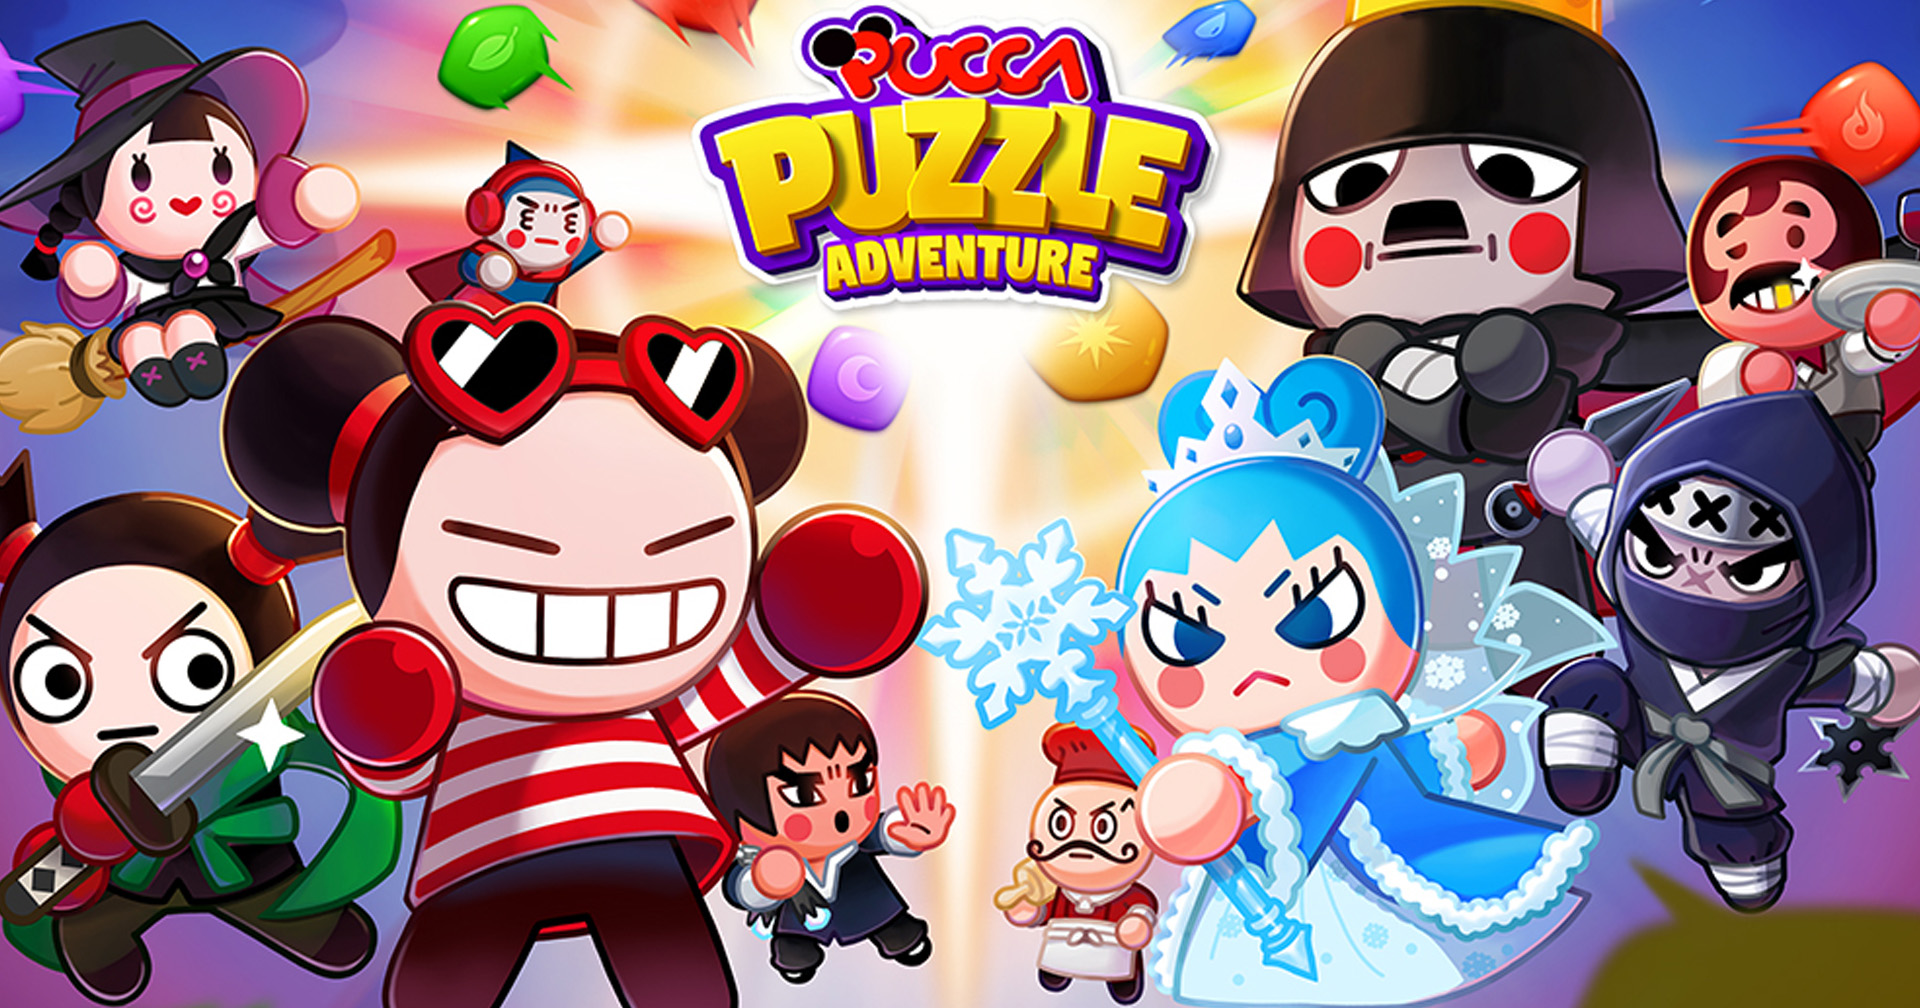 [รีวิวเกม] Pucca Puzzle Adventure เกมเรียงเพชร ไปกับหมวยซ่า ‘ปุ๊กก้า’ / แจกโค้ดผู้เล่นใหม่